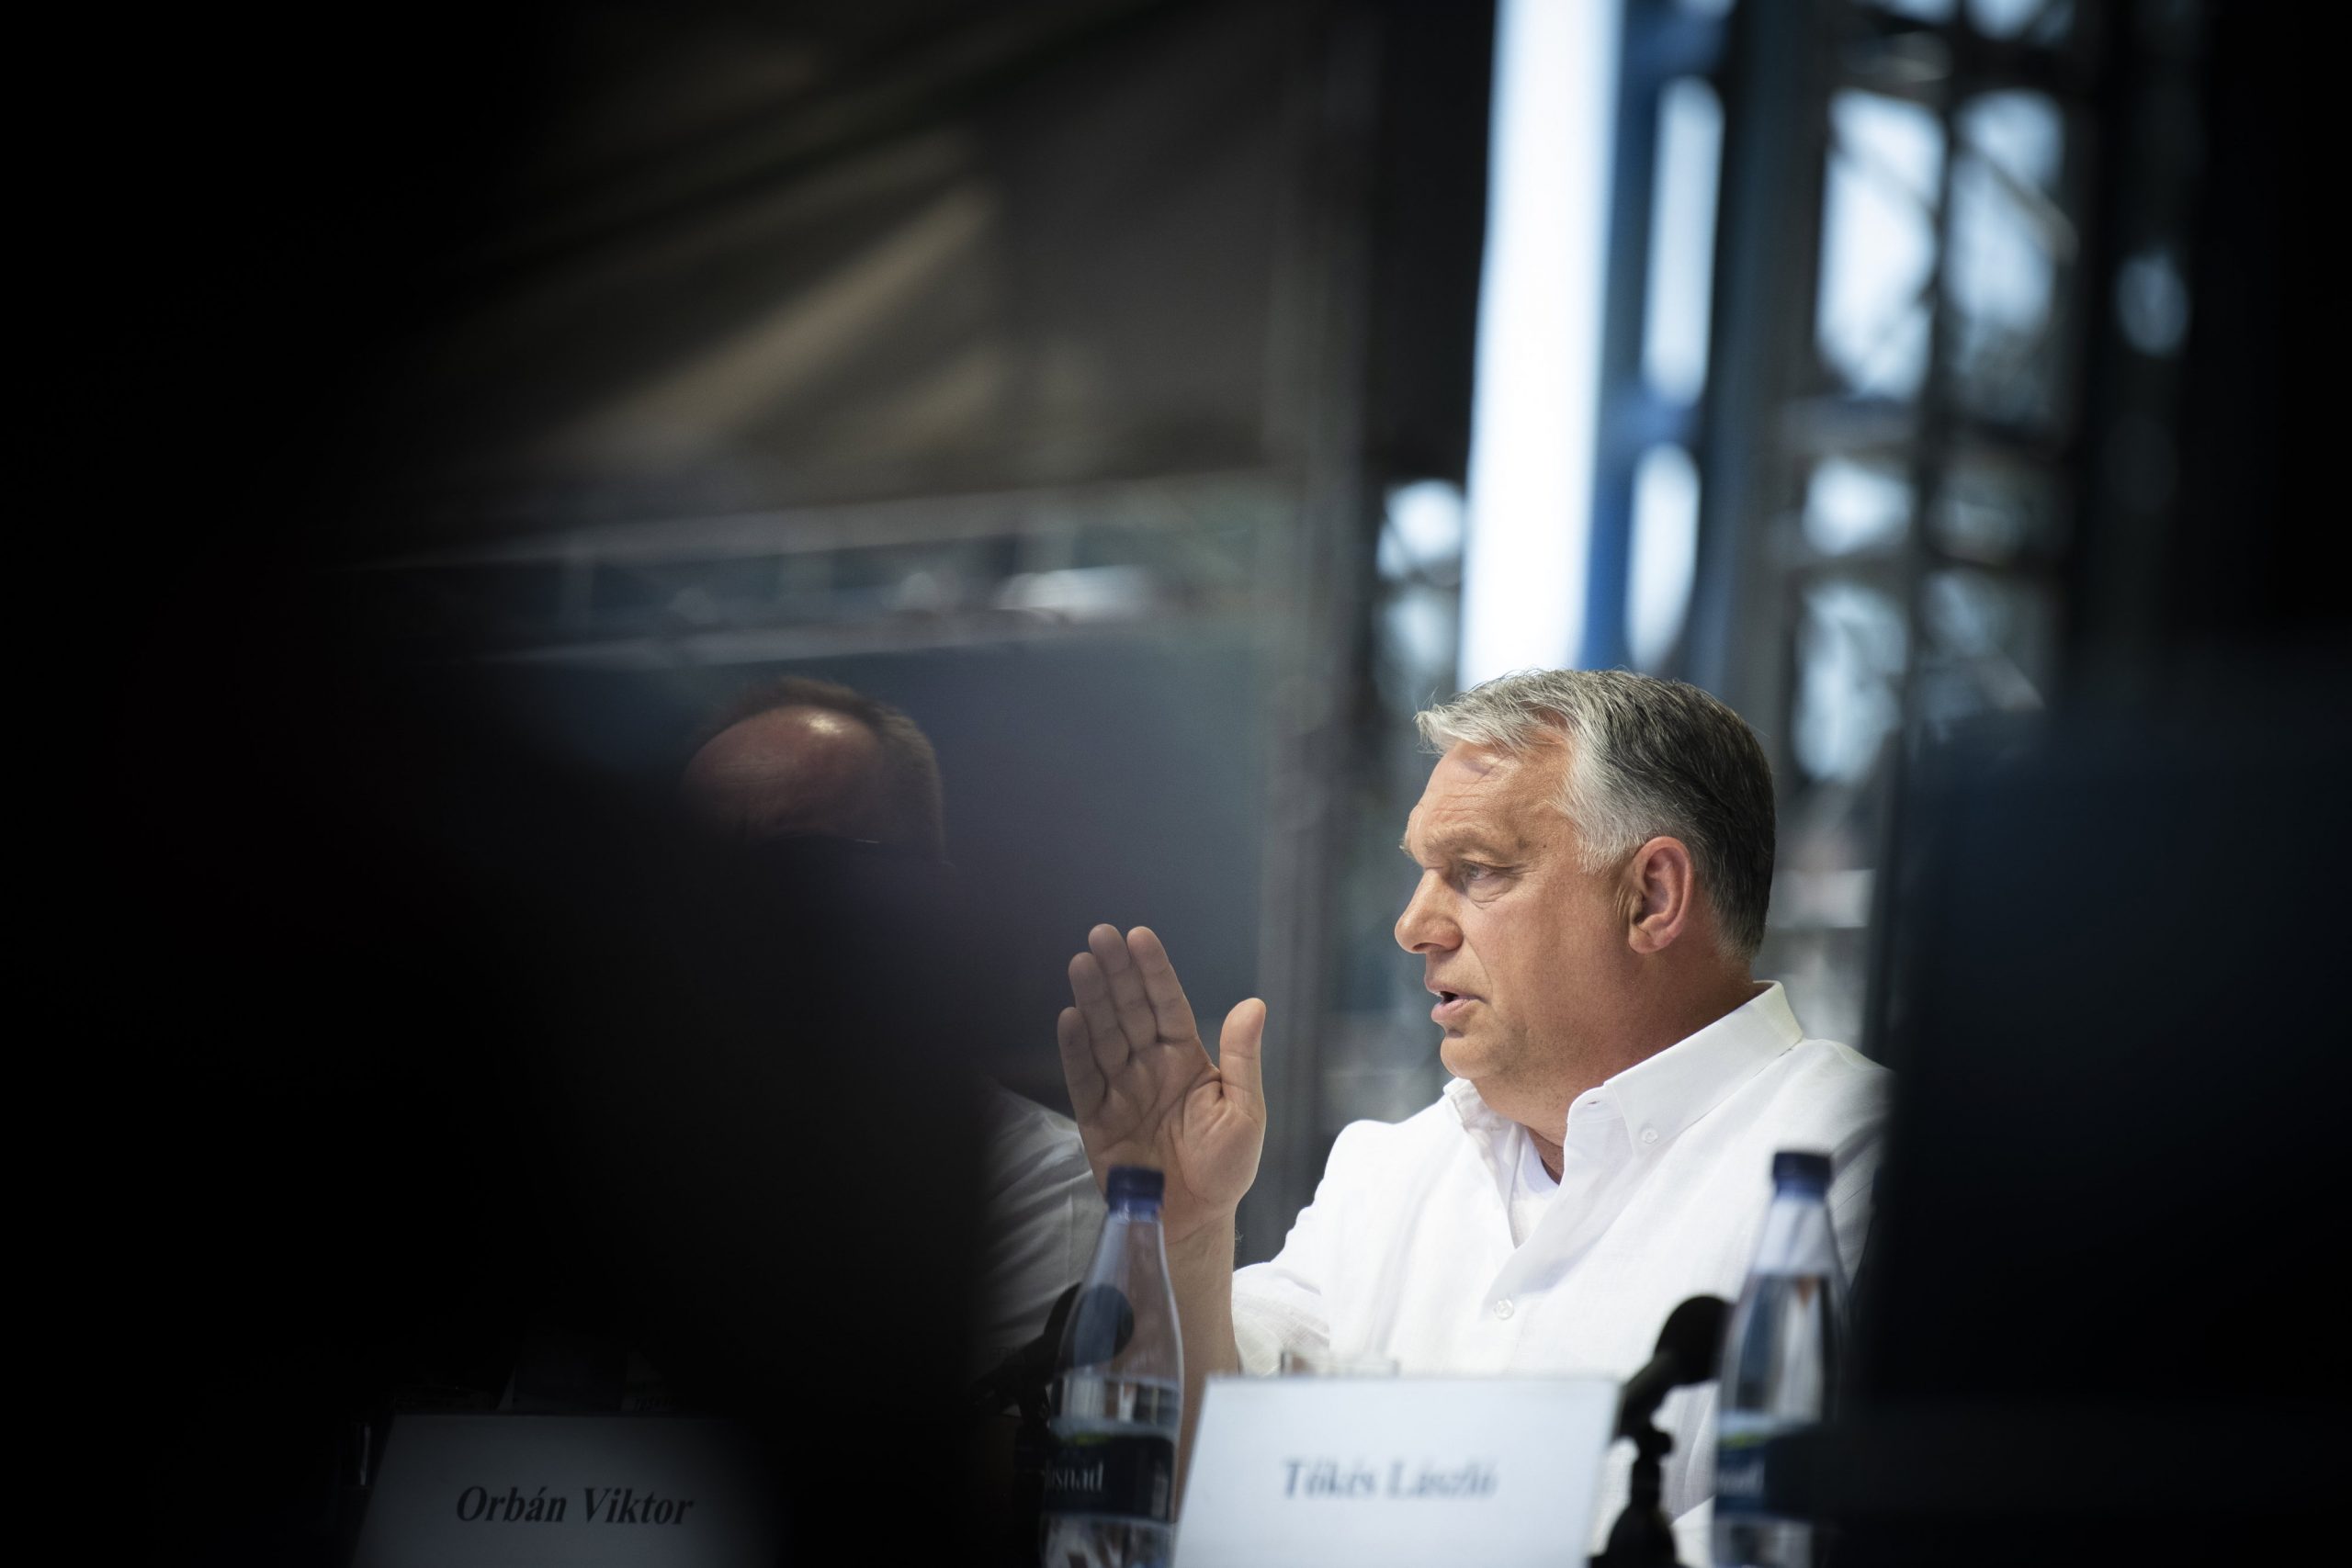 Viktor Orban își expune viziunea pentru viitorul Ungariei într-un deceniu de conflict